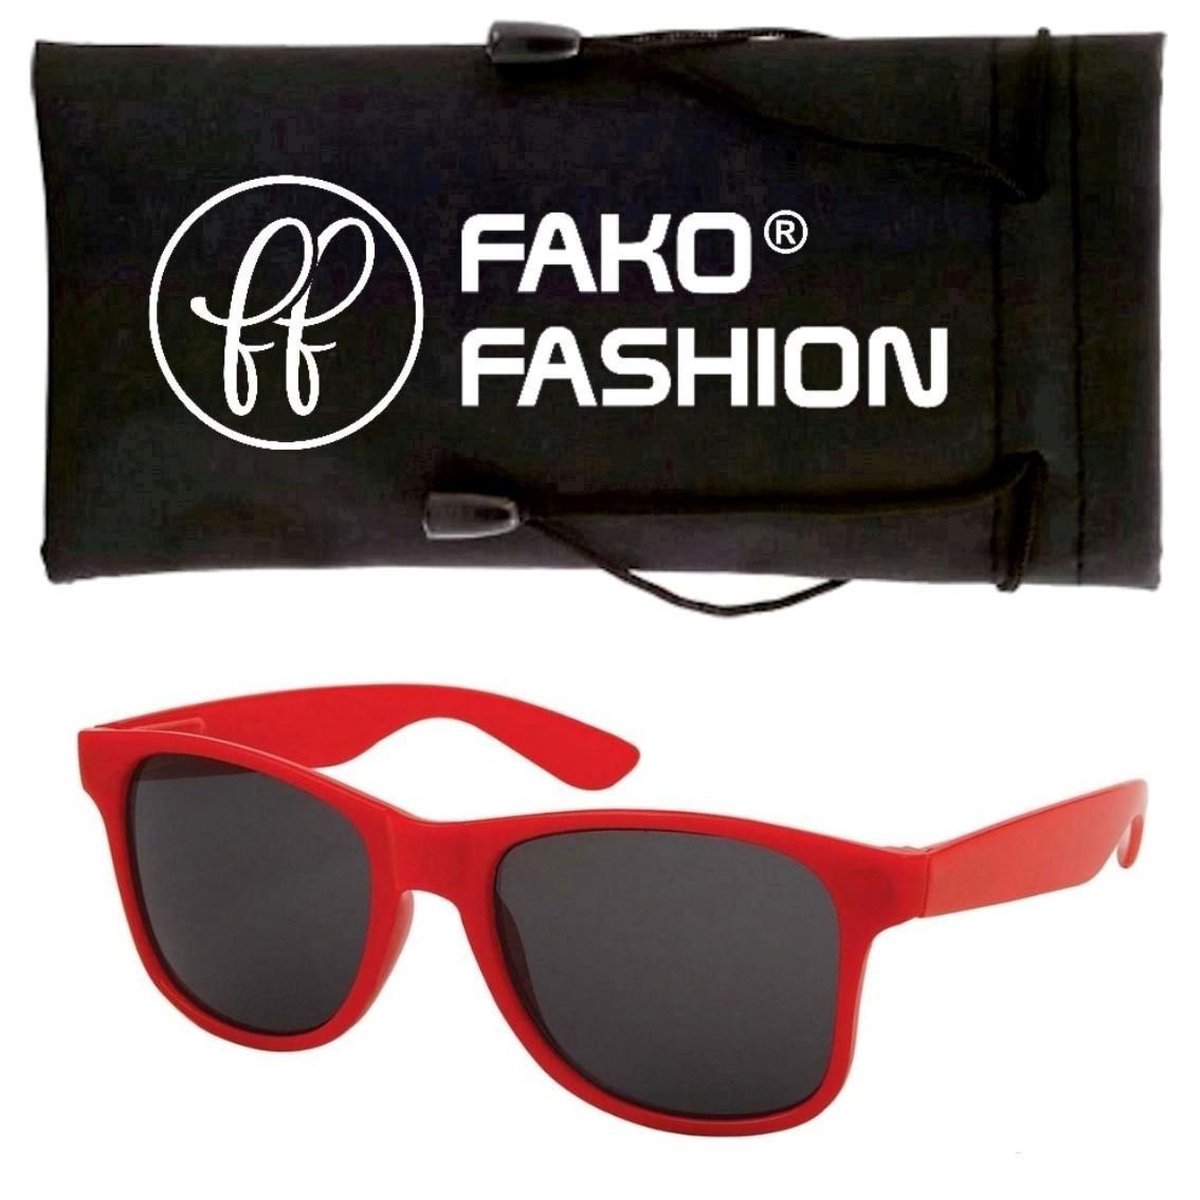 Fako Fashion® - Kinder Zonnebril - DLX - Rood